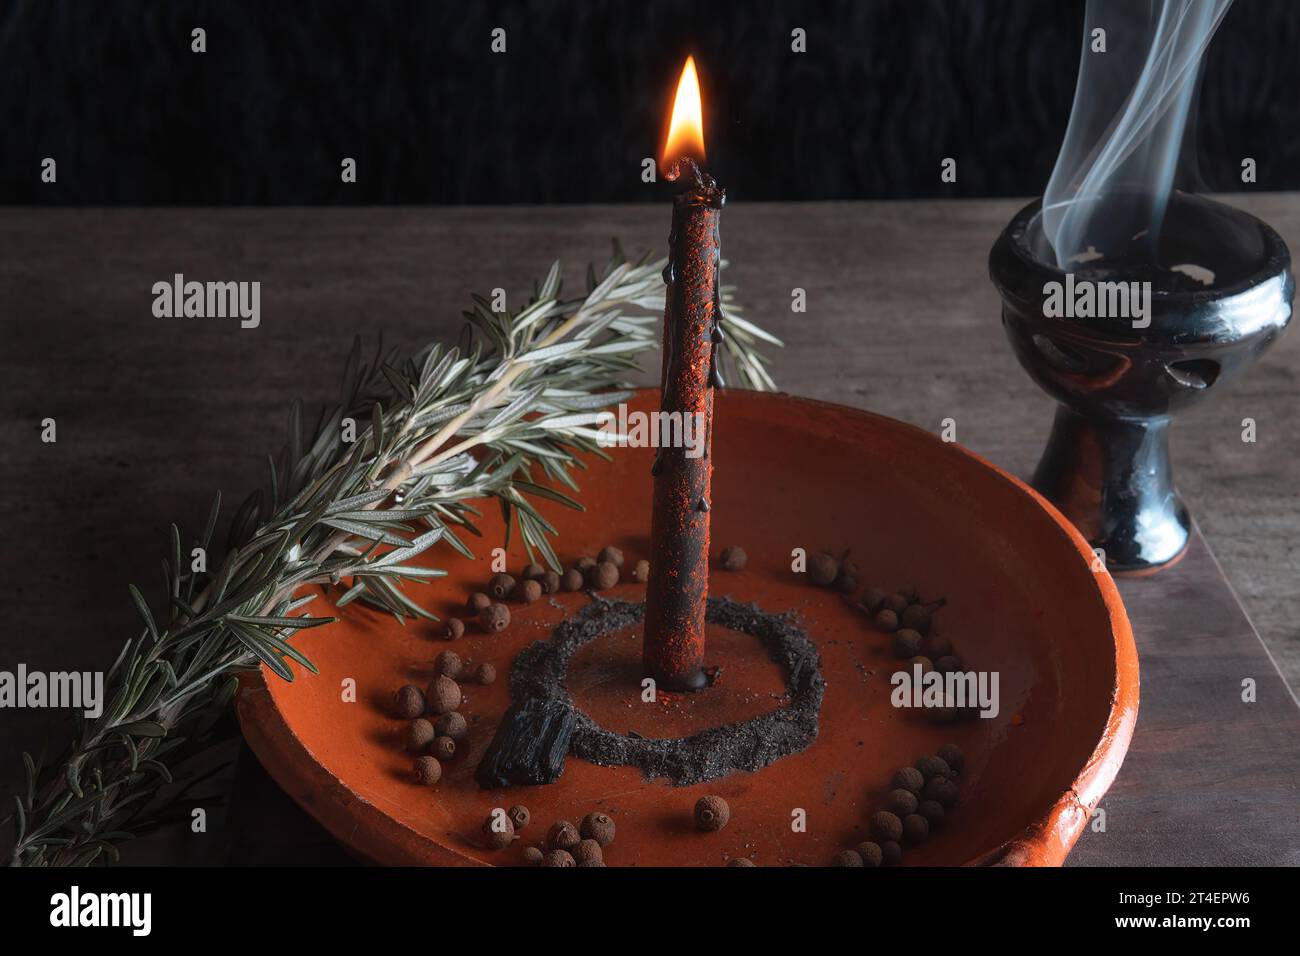 rituel traditionnel avec feu et bougie noire dans une assiette d'argile accompagnée de poivre, sel de mer, herbes et encens Banque D'Images